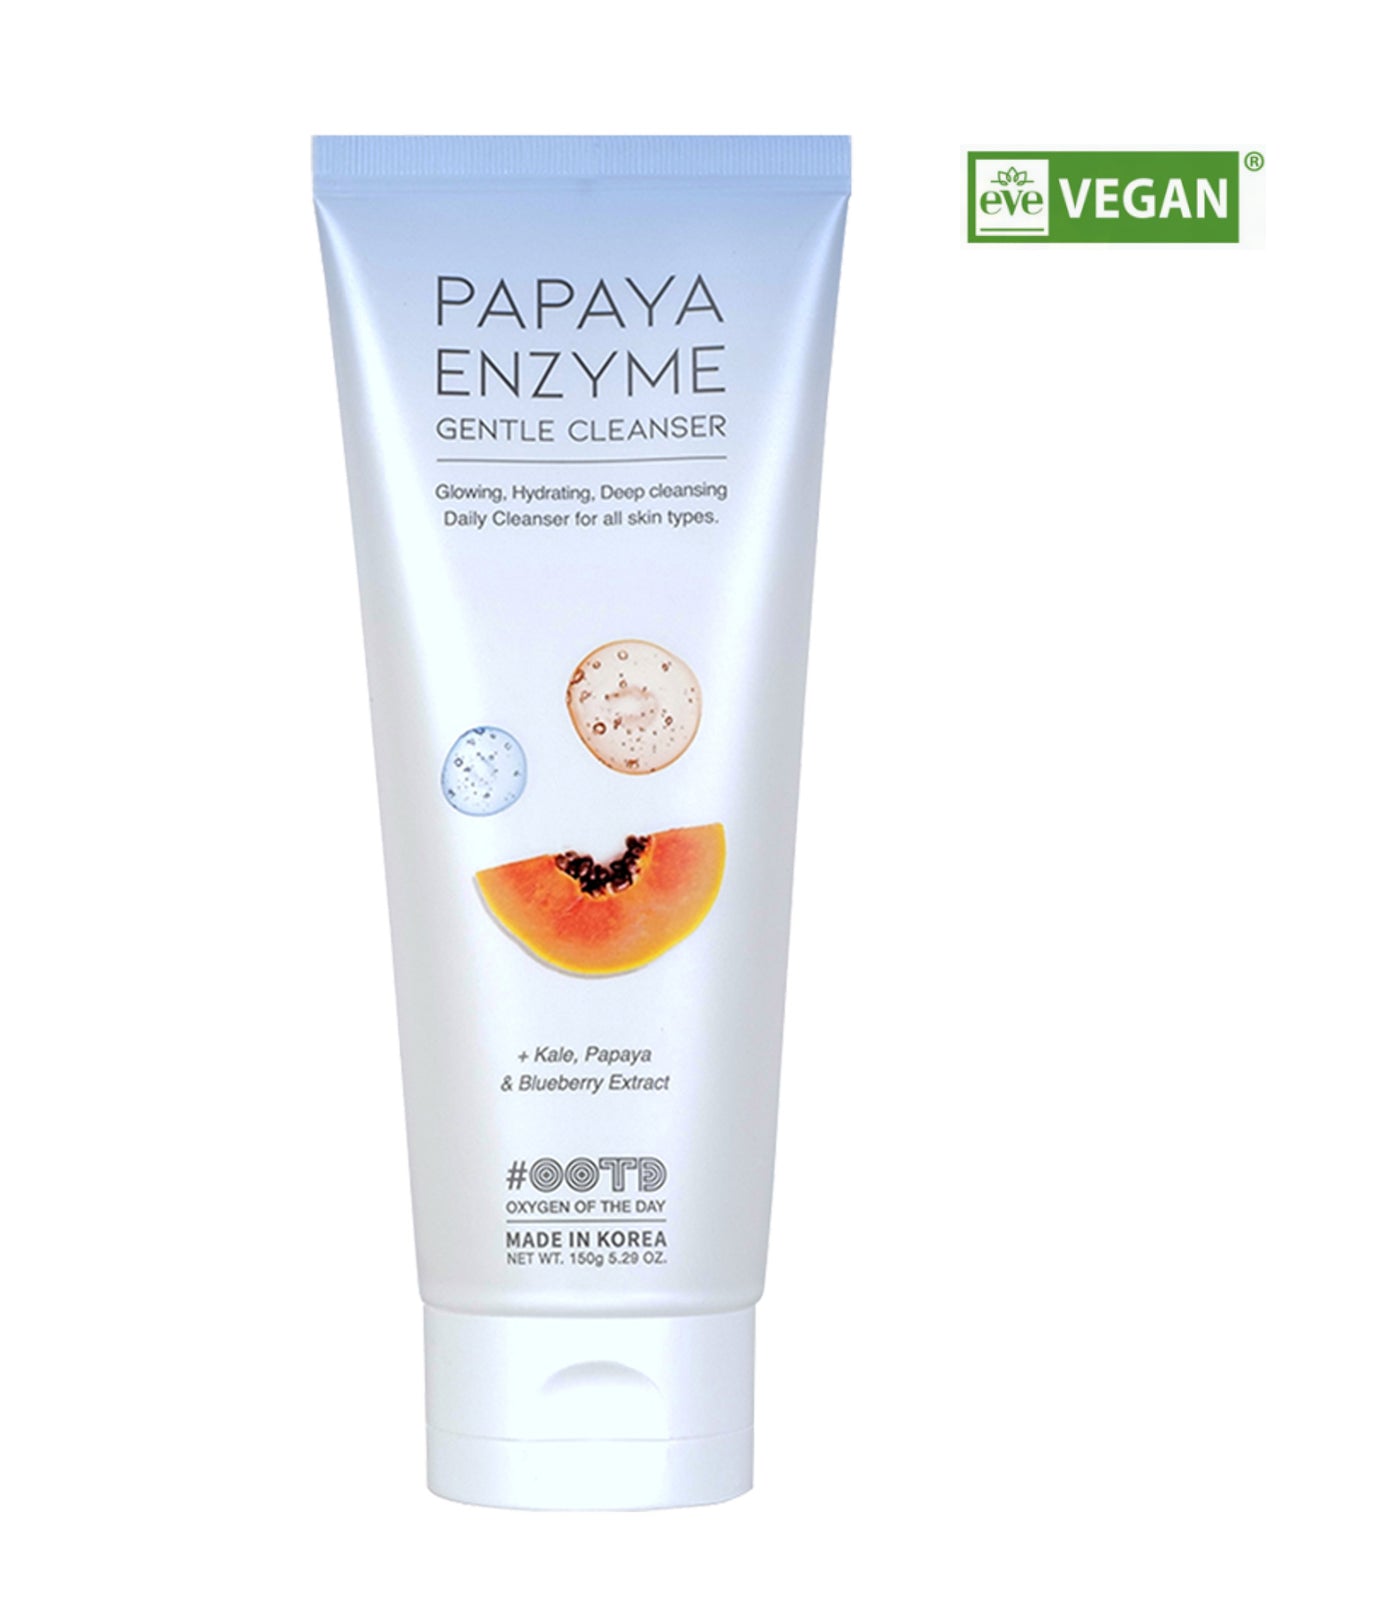 OOTD Papaya Enzyme Gentle Cleanser